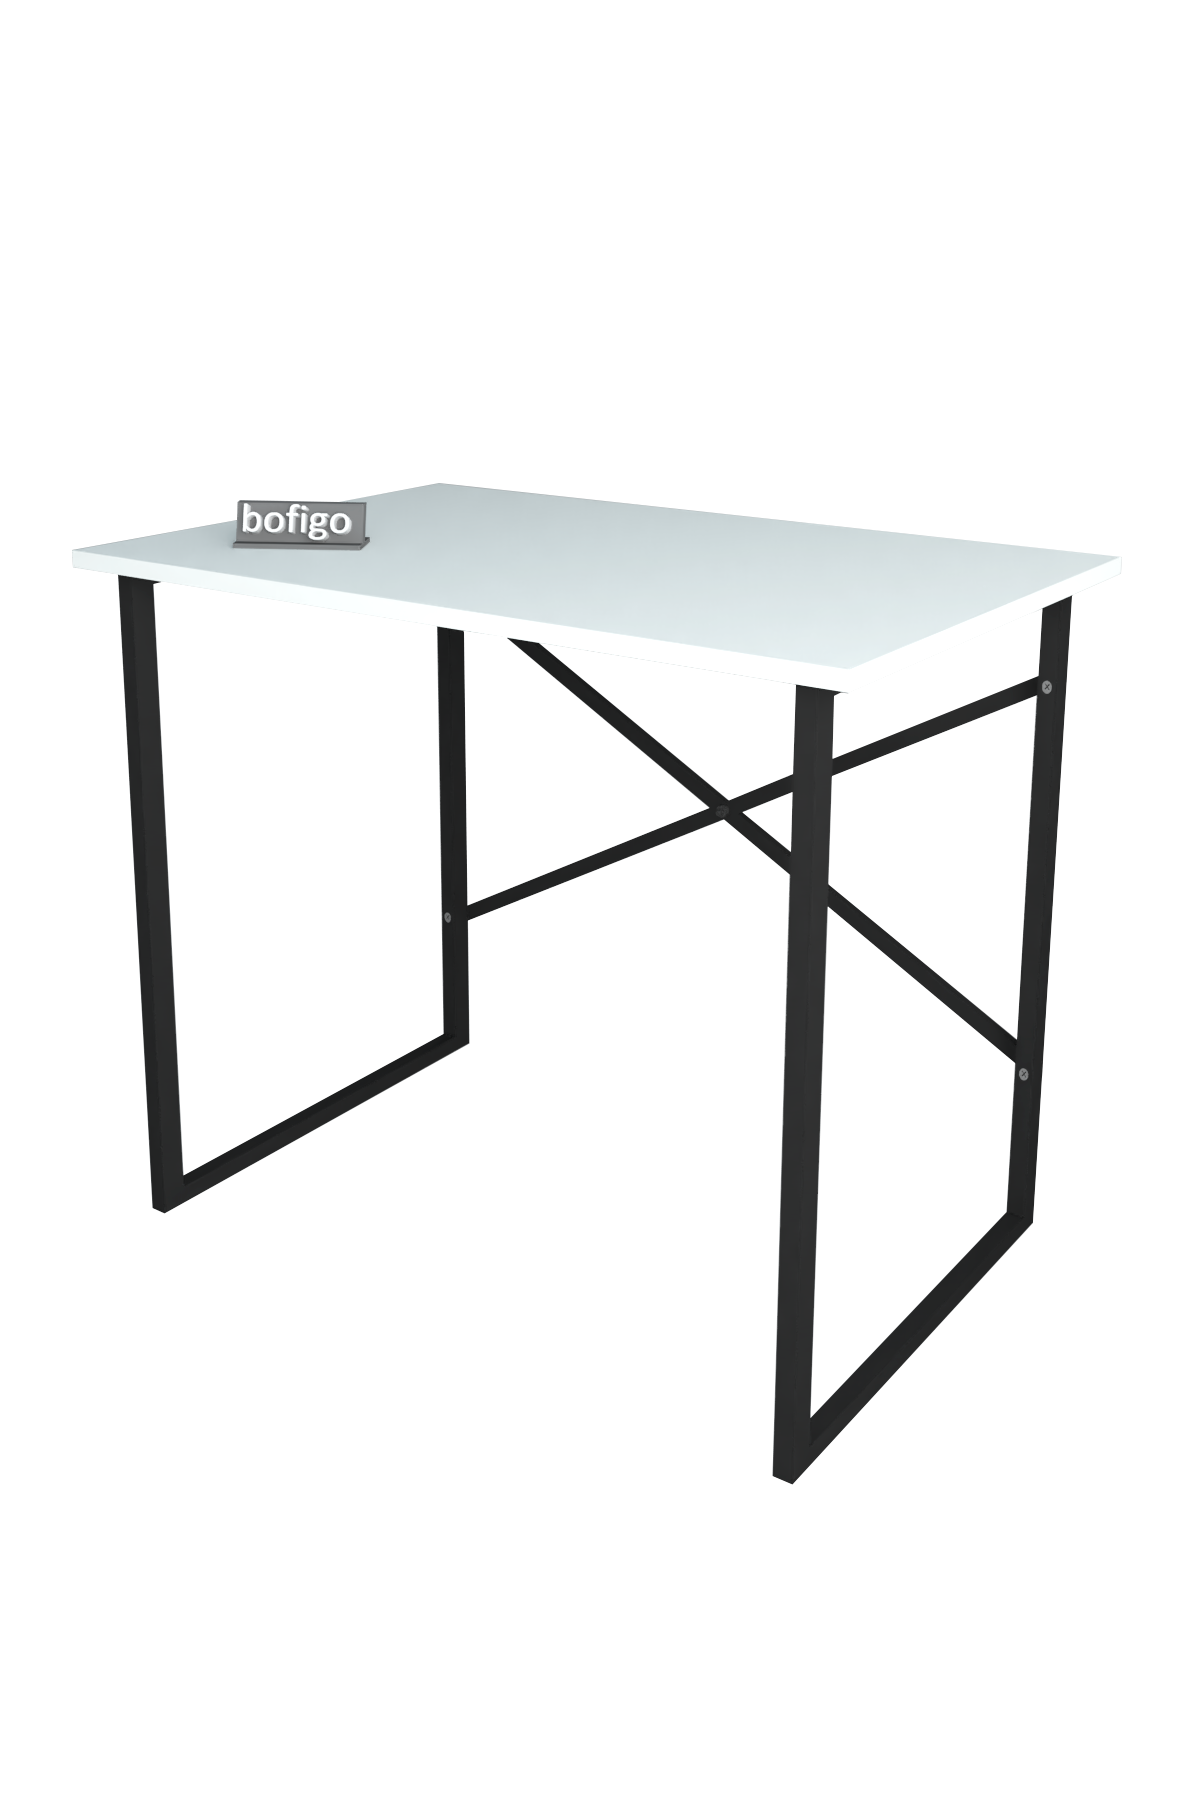 Bofigo Çalışma Masası 60x90 cm Beyaz